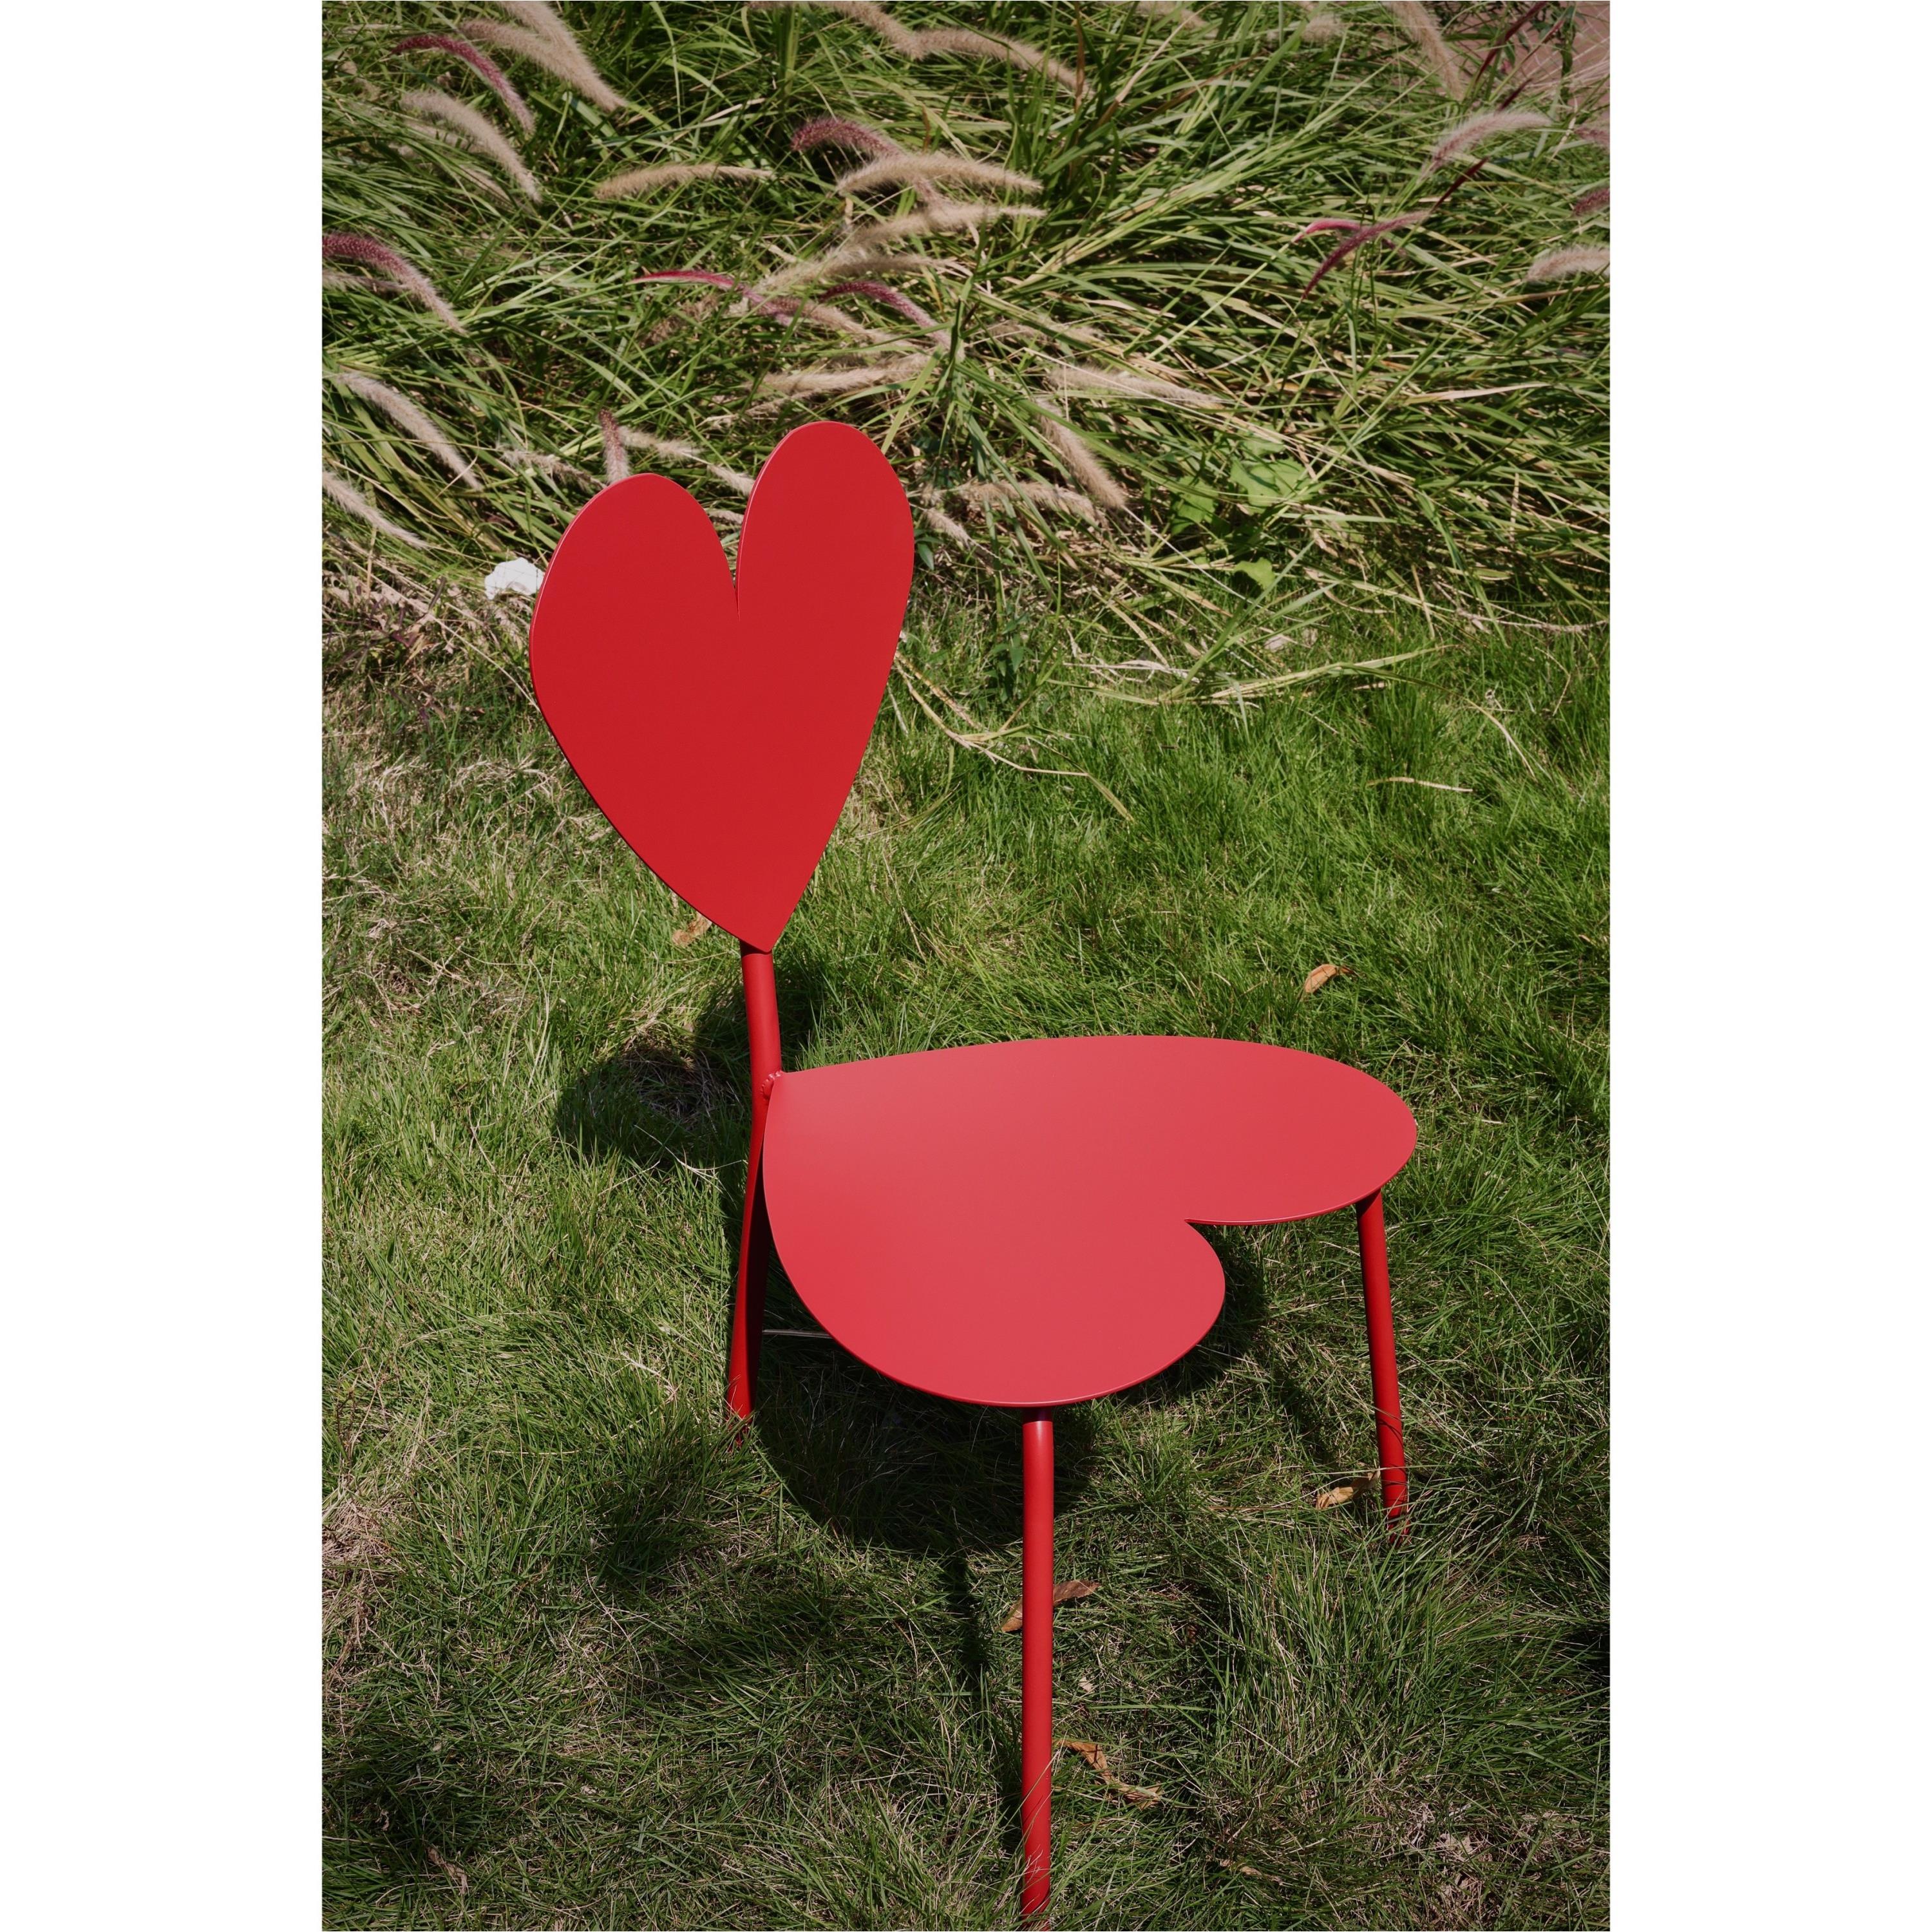 嘻物所爱心红色设计椅子座椅极简约金属现代艺术摆拍网红造型凳子